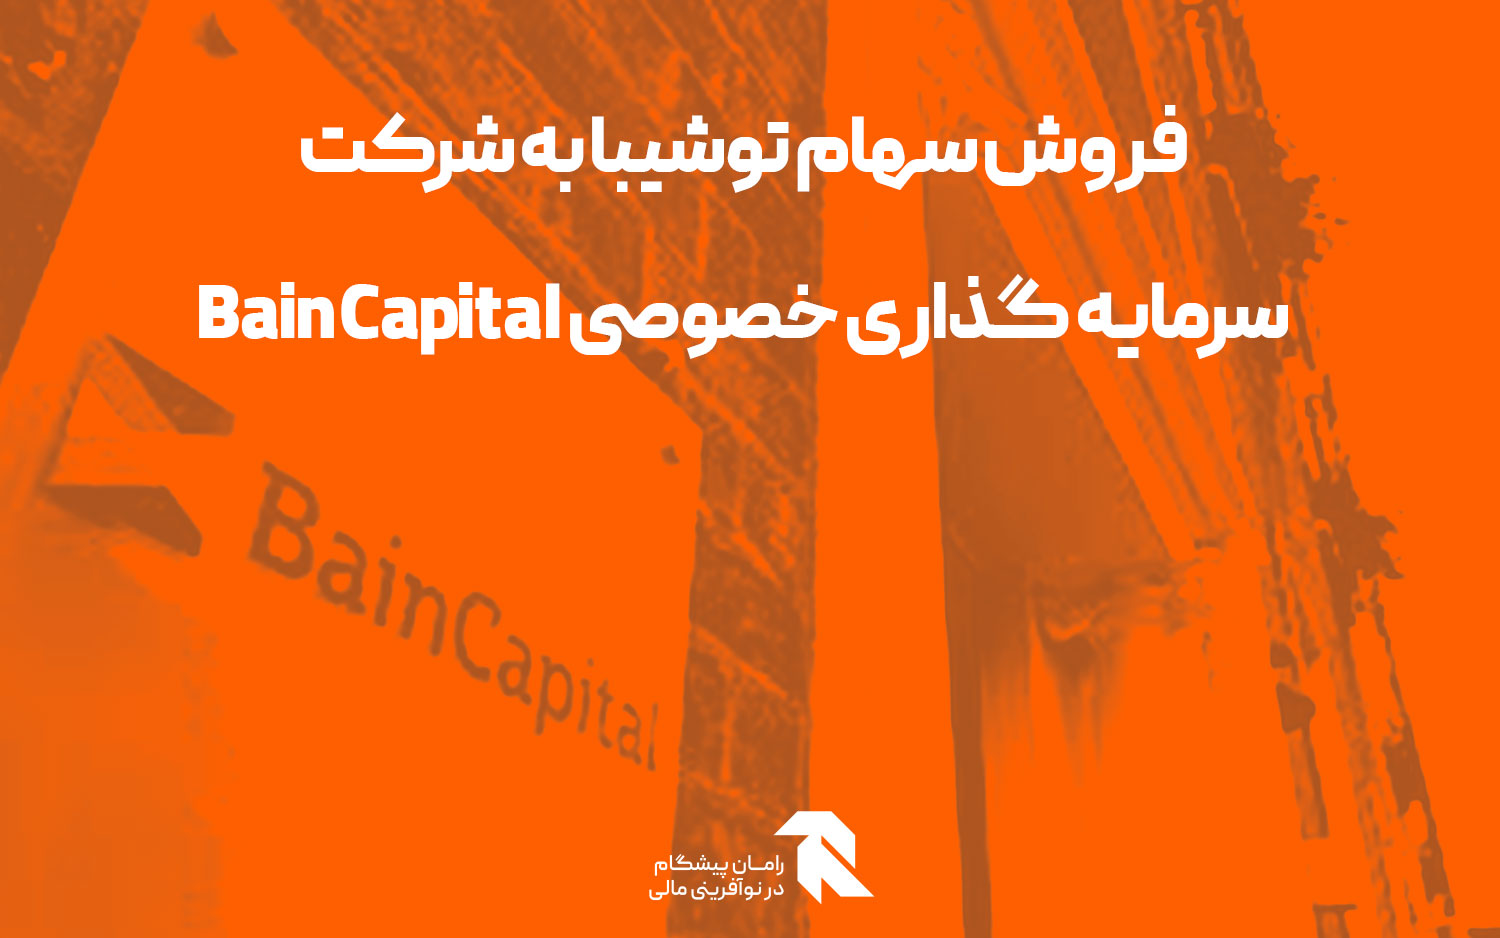 فروش سهام توشیبا به شرکت سرمایه گذاری خصوصی Bain Capital